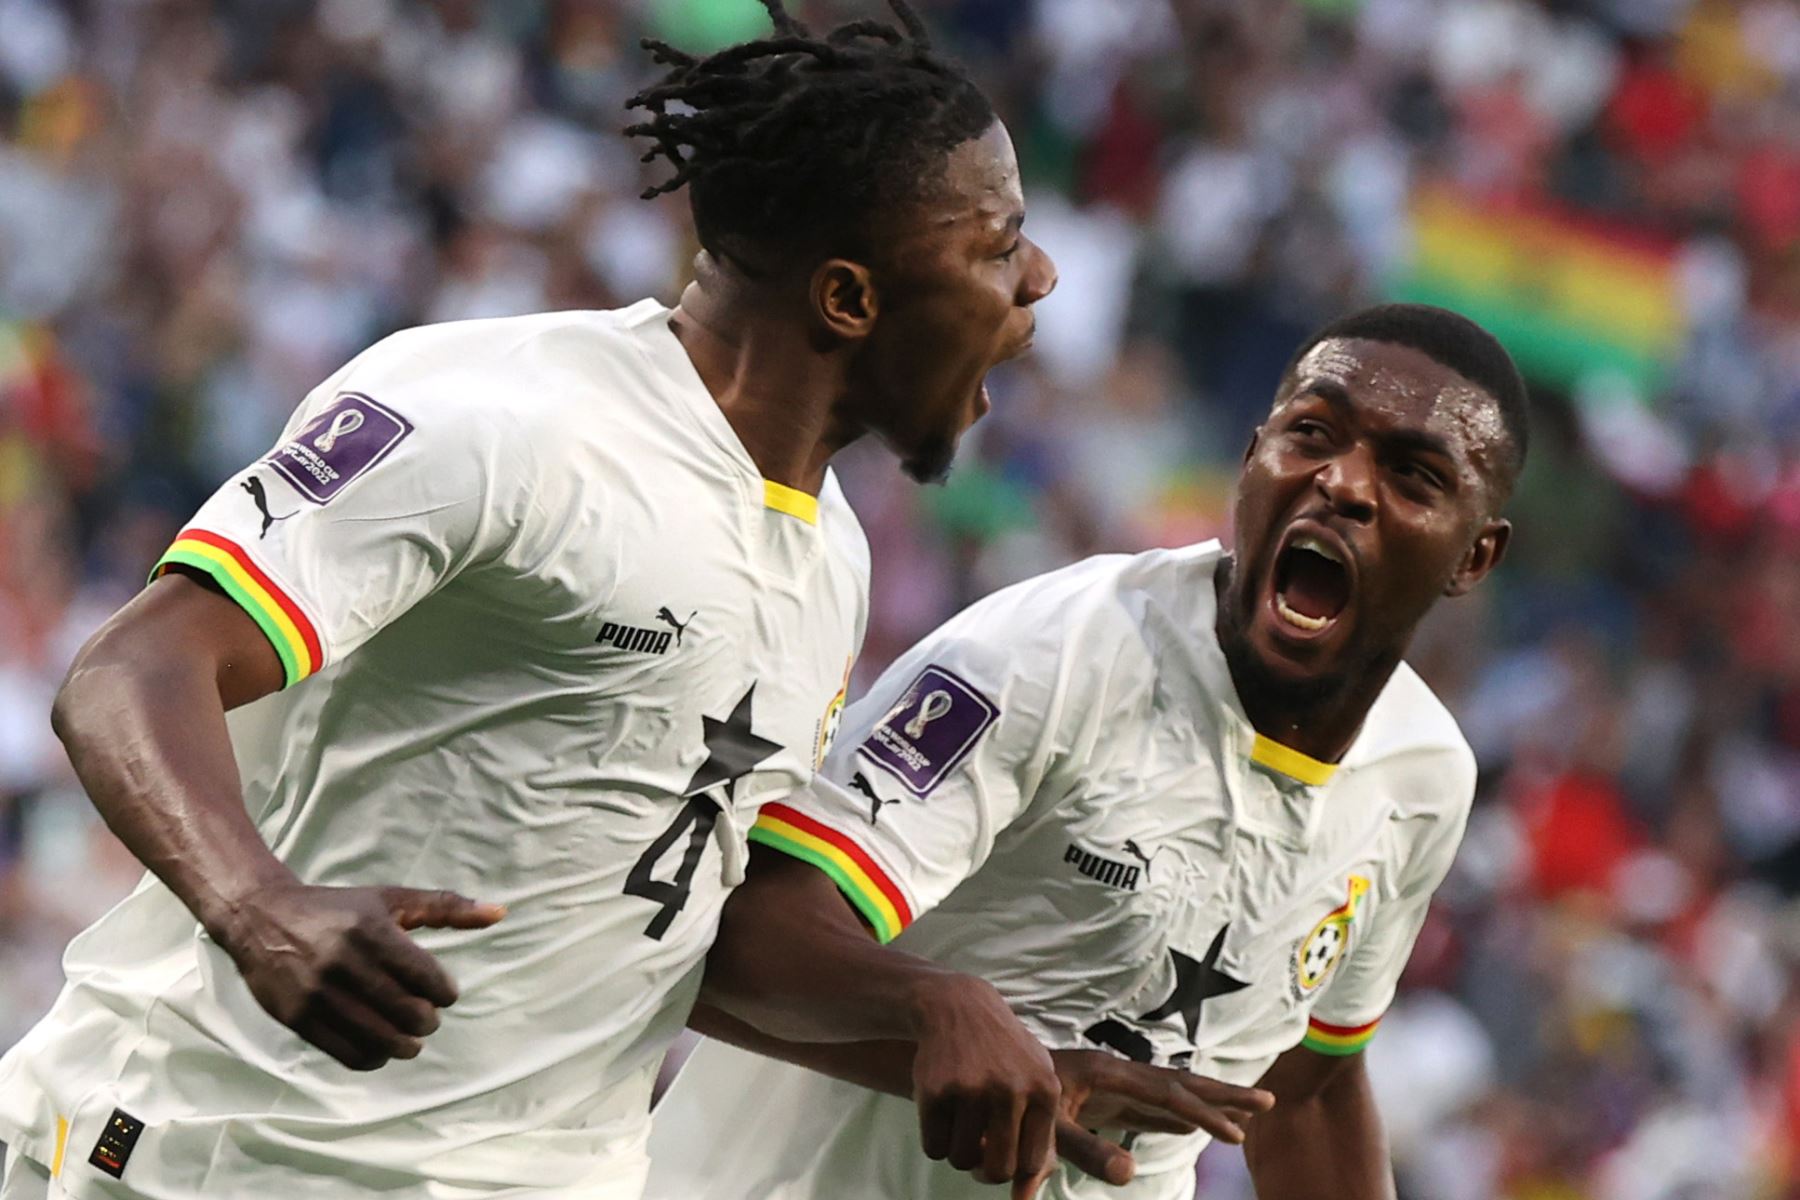 Vincent Aboubakar de Camerún marca el segundo gol de su equipo durante el partido de fútbol del grupo G de la Copa Mundial de la FIFA 2022 entre Camerún y Serbia en el estadio Al Janoub en Al Wakrah, Catar. Foto: EFE